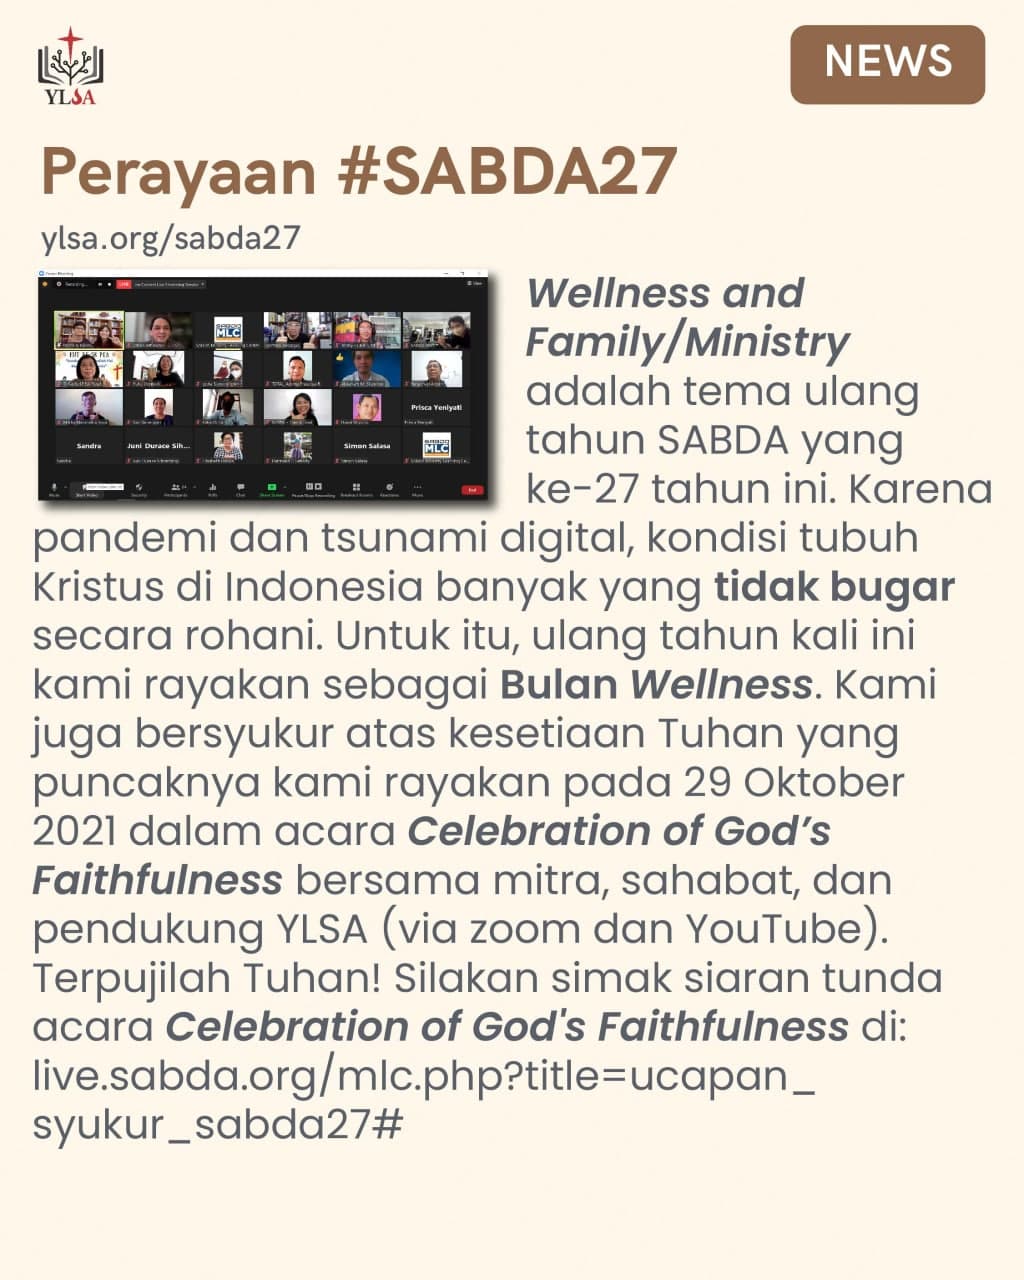 "Wellness and Family/Ministry" itulah tema ulang tahun SABDA yang ke-27 tahun ini. Mari kita terus memuji dan melayani Tuhan dengan rasa takjub dan gentar. Terpujilah Tuhan!